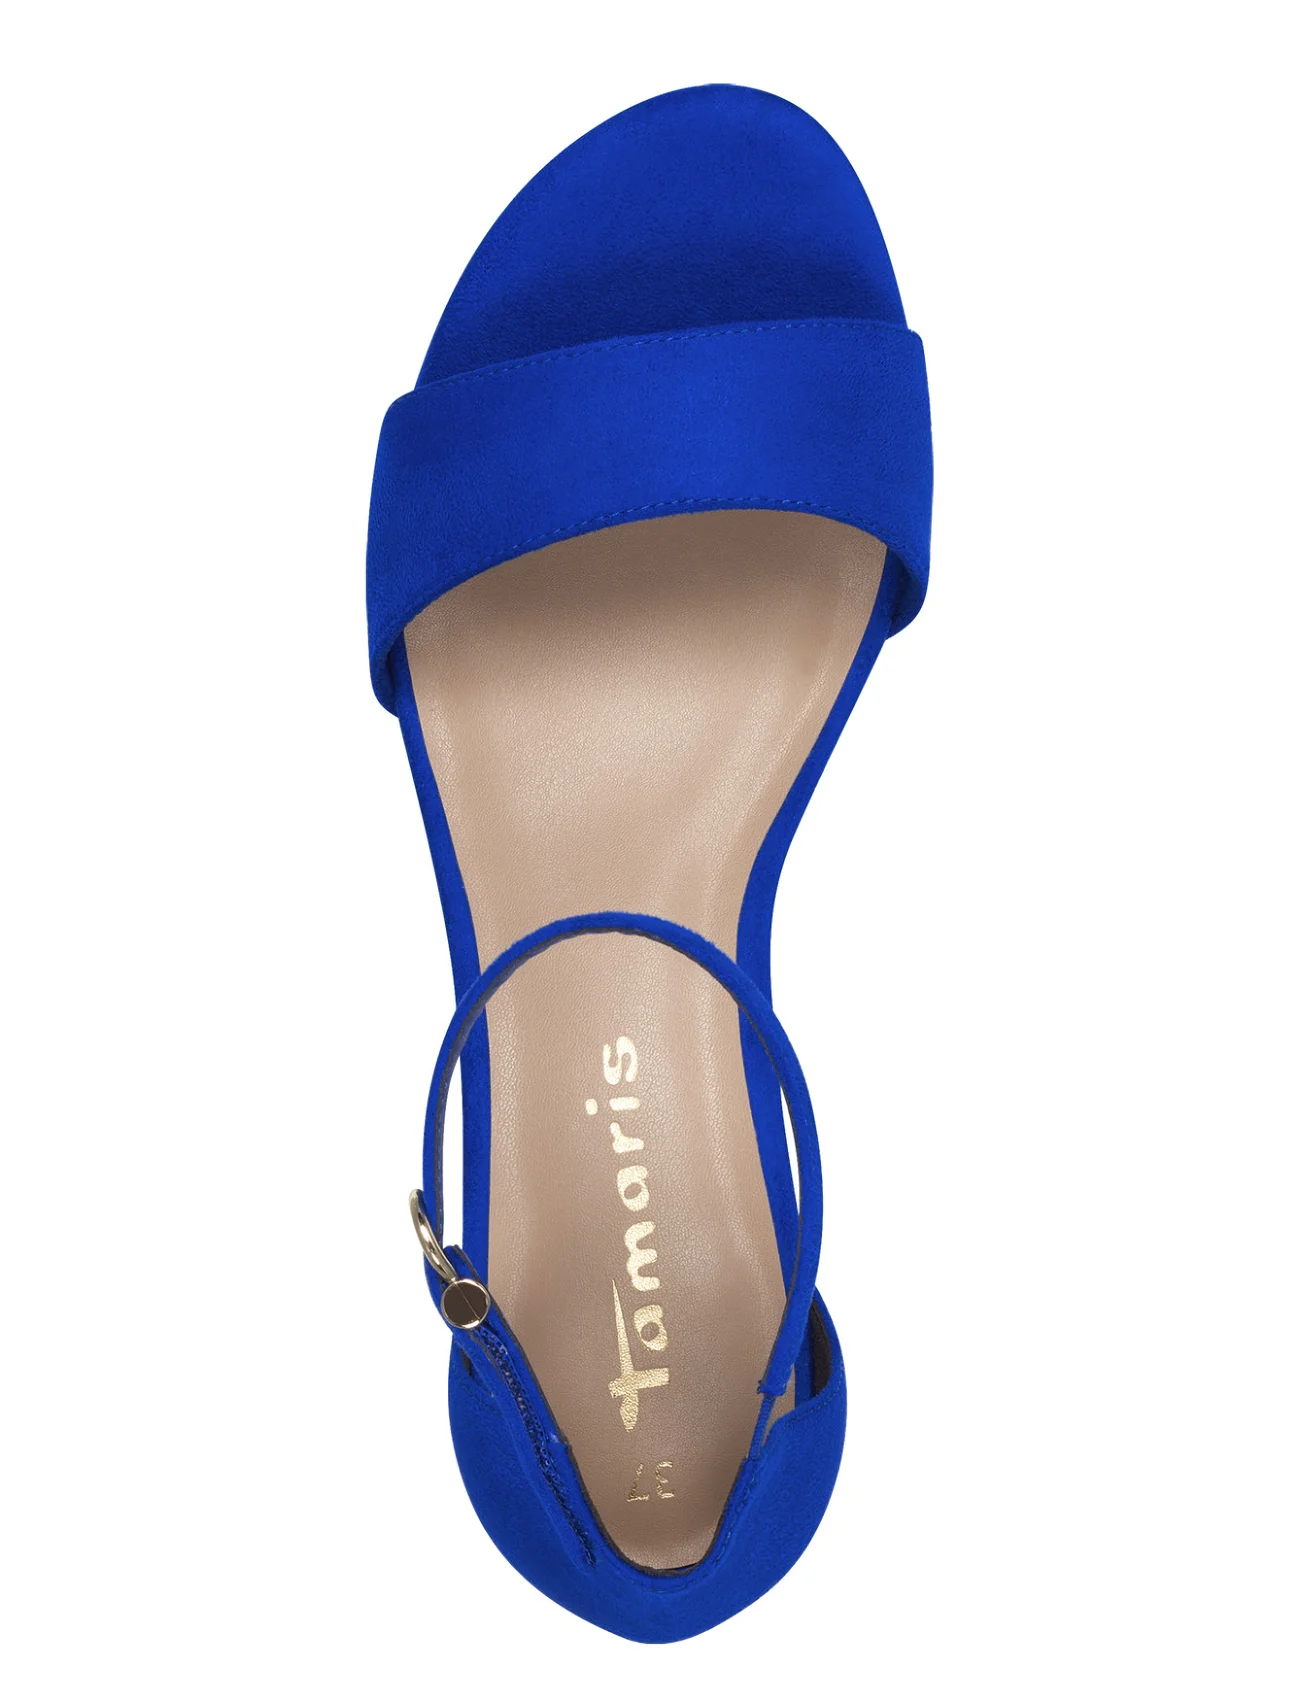 Tamaris - Women Sandals - odzież imprezowa w cenach outletowych - royal blue - 1